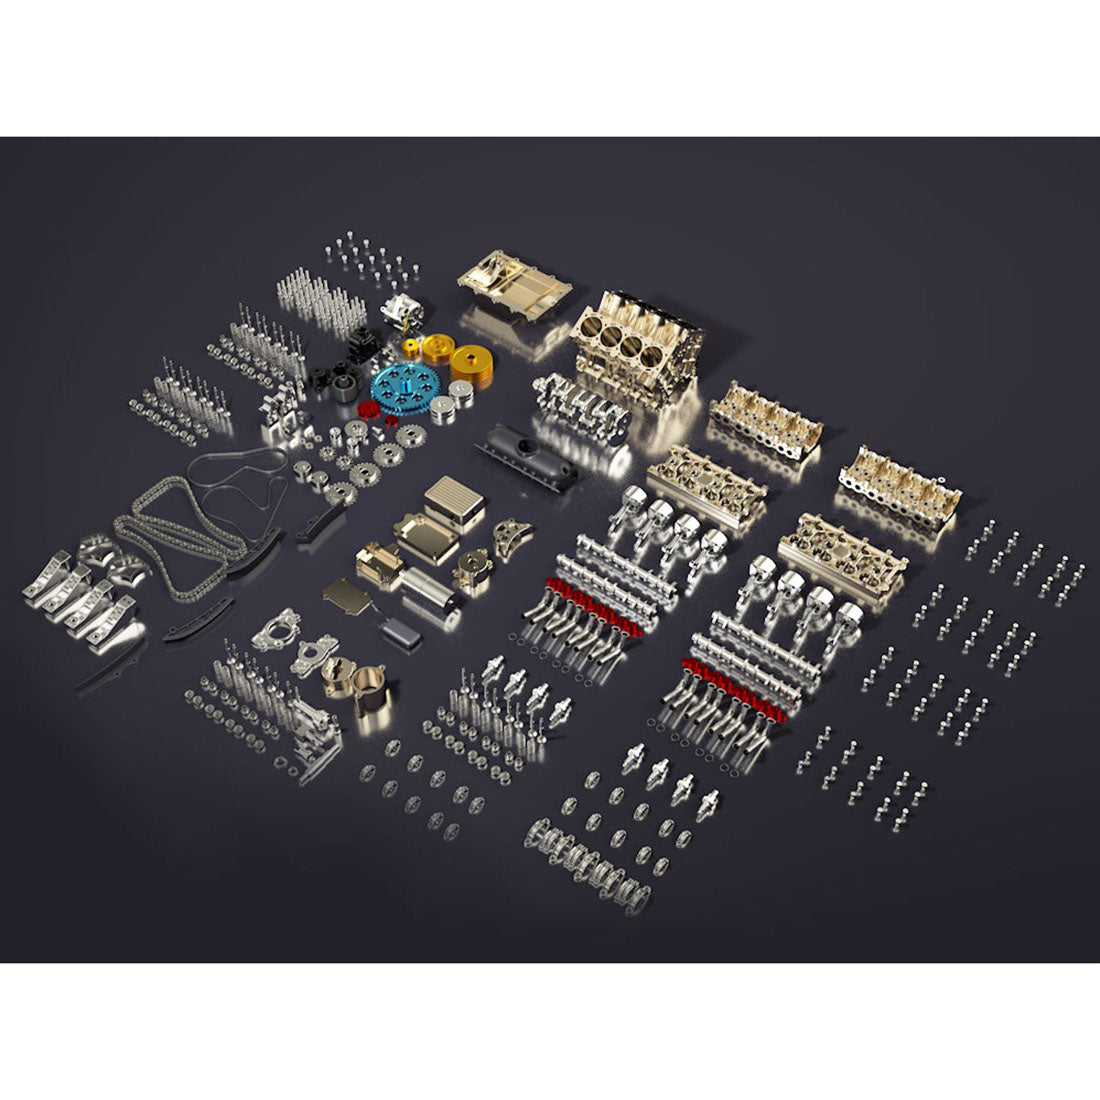 Custom Build V8 Engine | 3D model